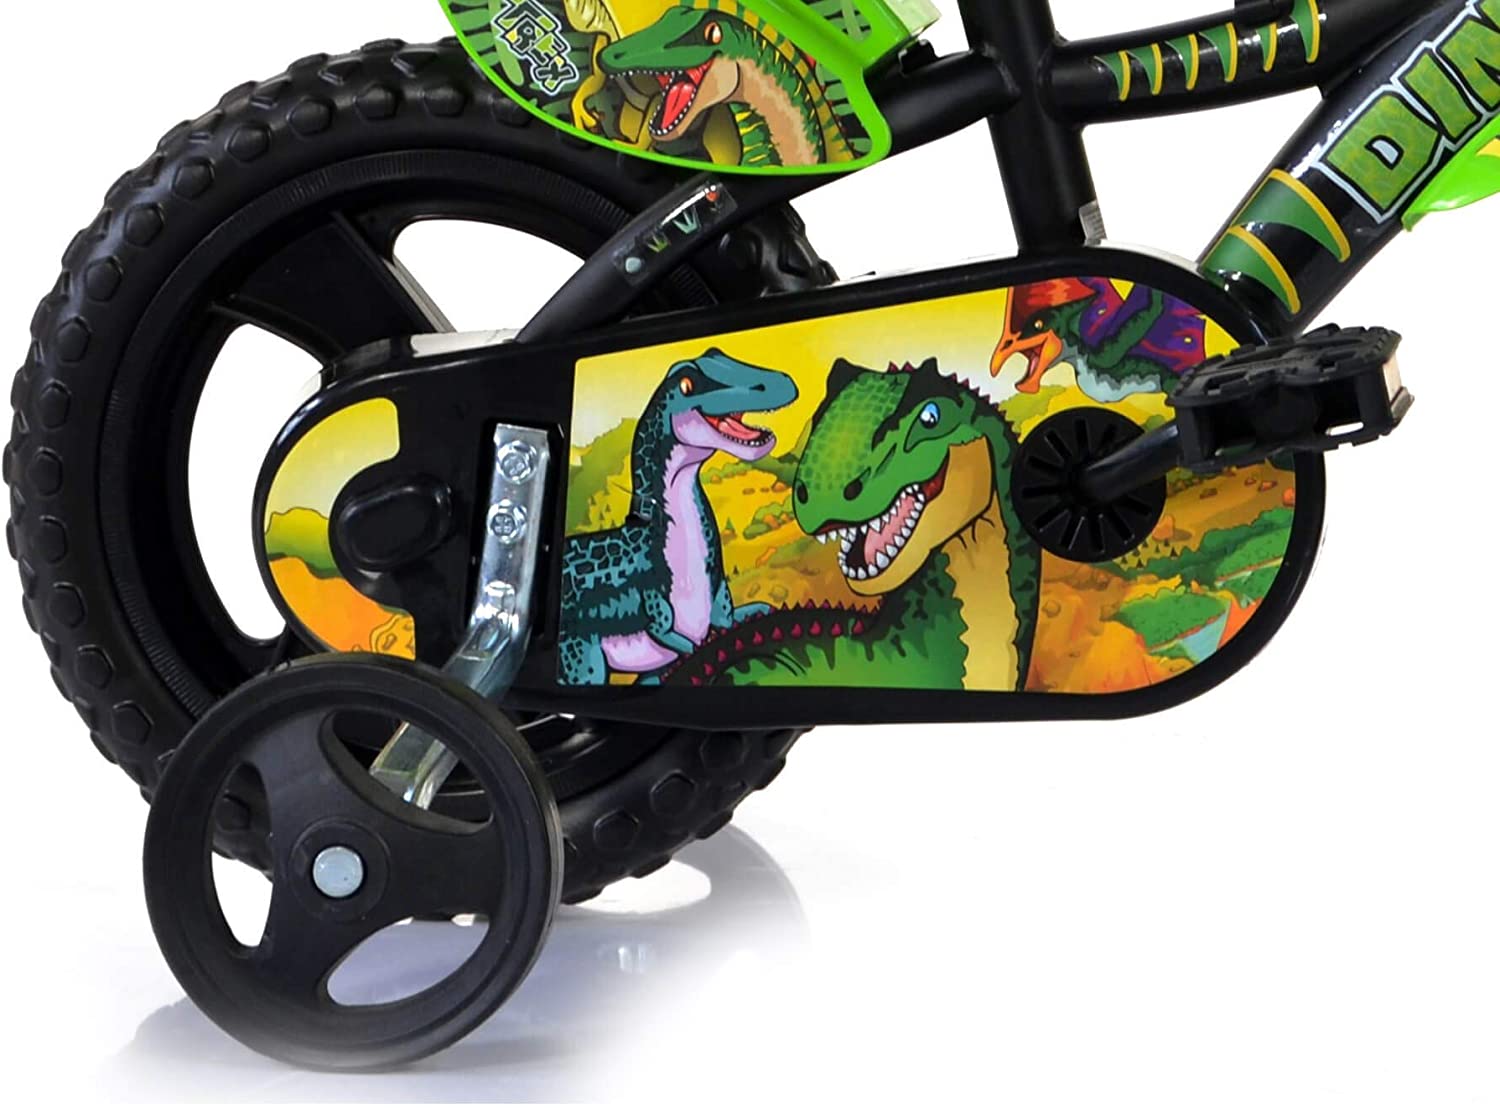 Bicicletta 14 pollici bicicletta dinosauro per bambini con stabilizzatori, mascherina frontale - adatta dai 5 ai 7 anni - 